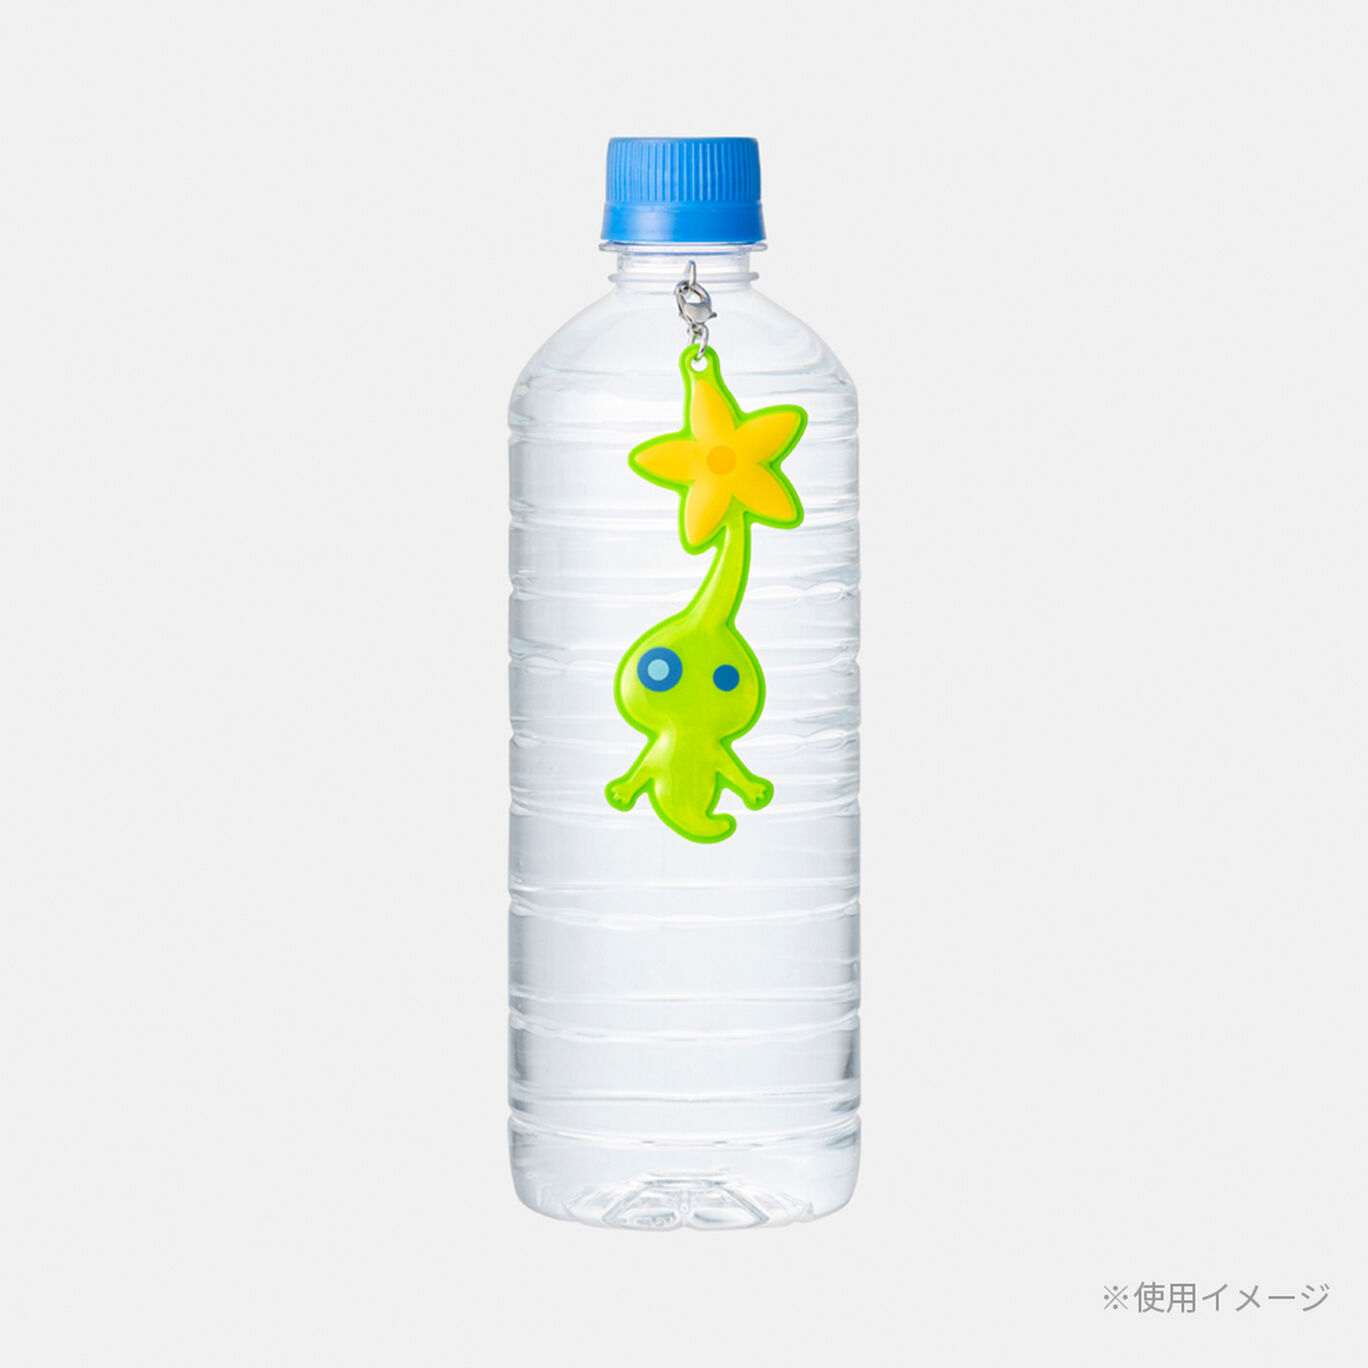 リフレクター 暗闇を明るく照らすヒカリピクミン PIKMIN【Nintendo TOKYO取り扱い商品】